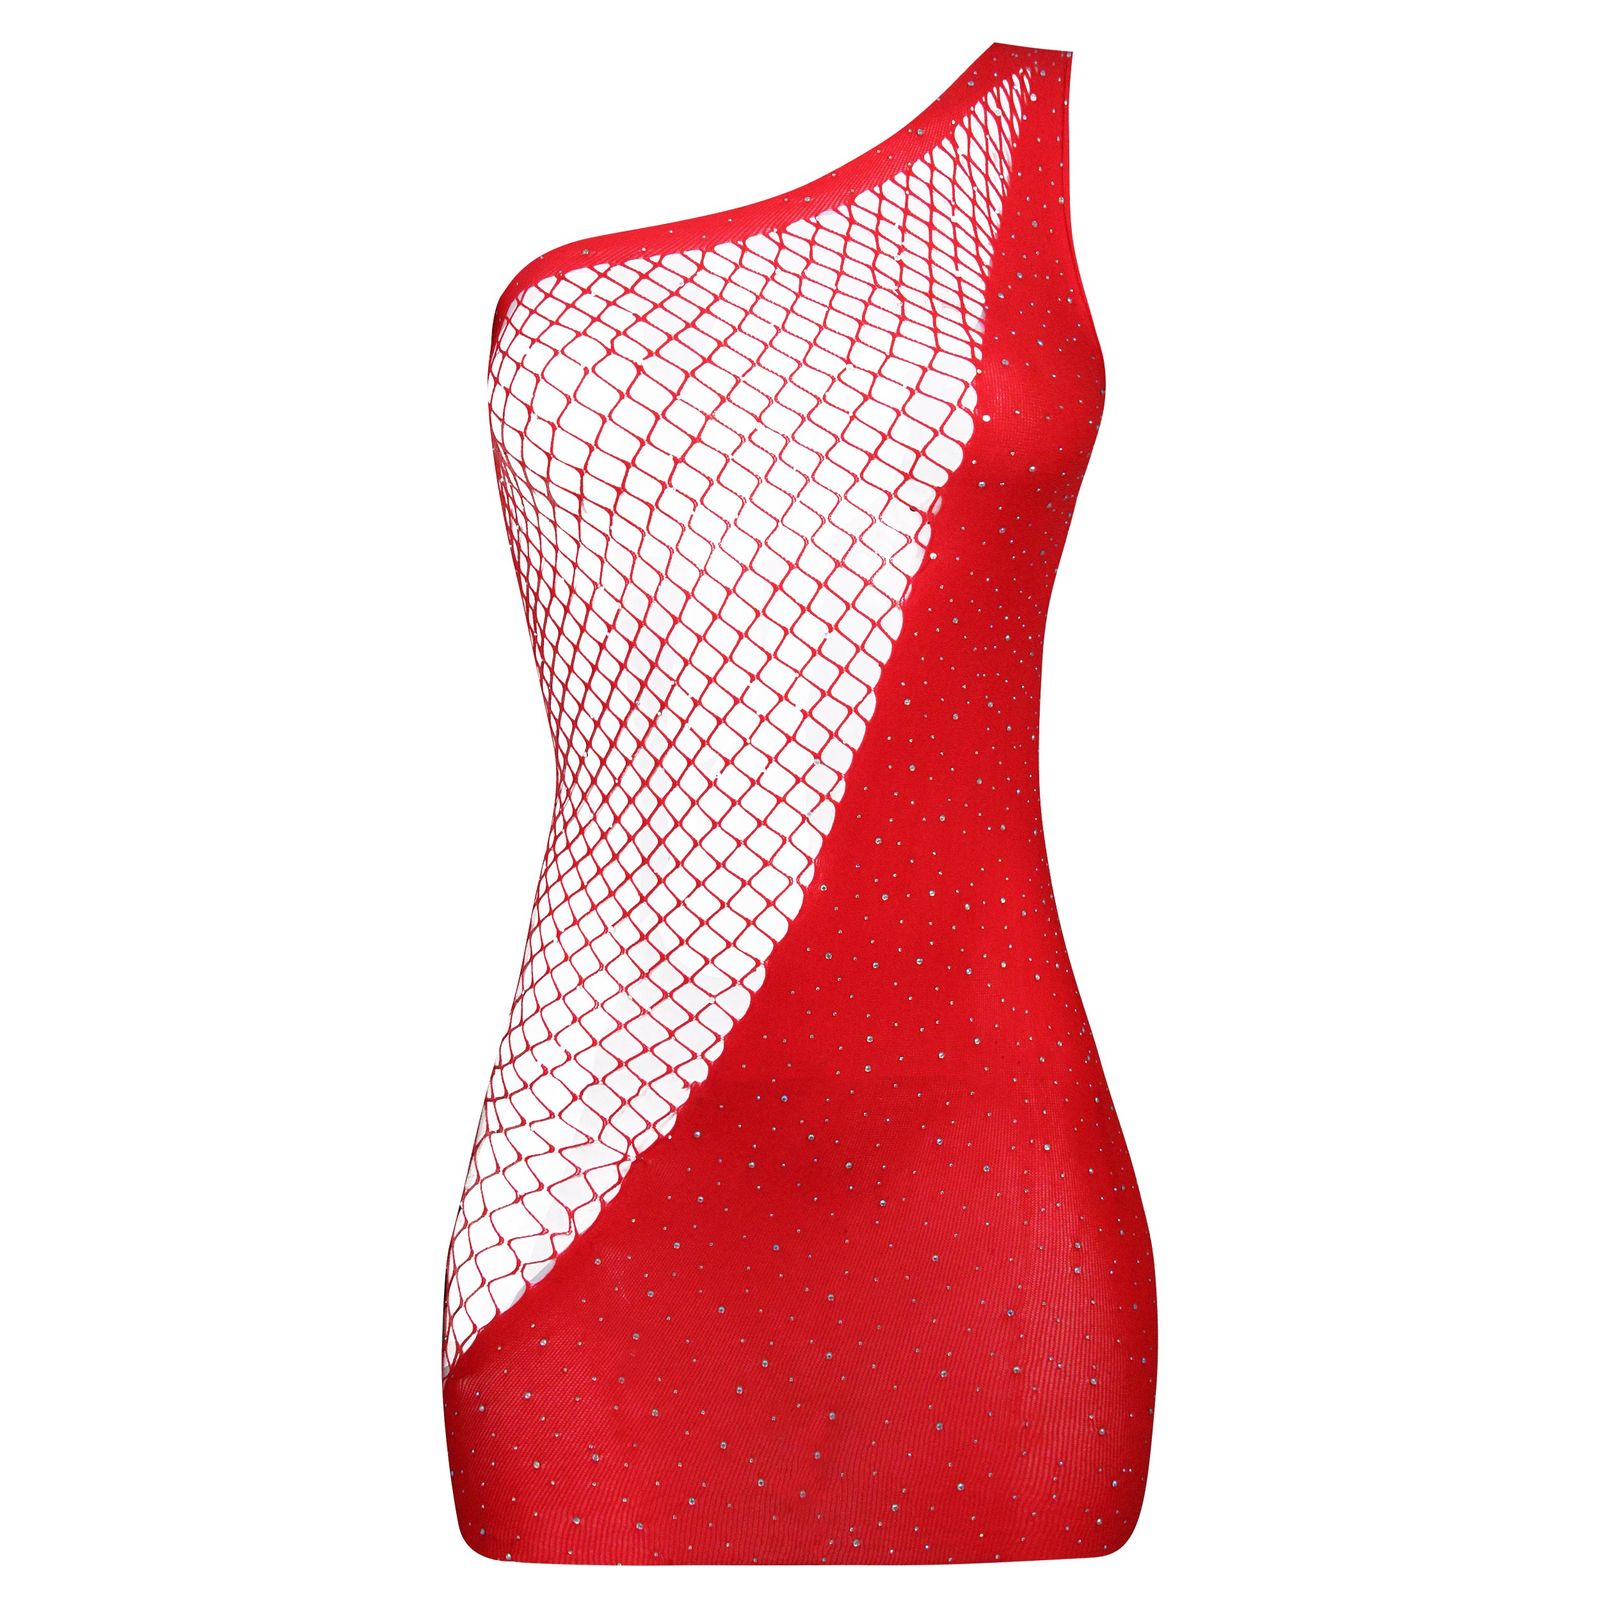 لباس خواب زنانه ماییلدا کد 4593-6893 رنگ قرمز -  - 2